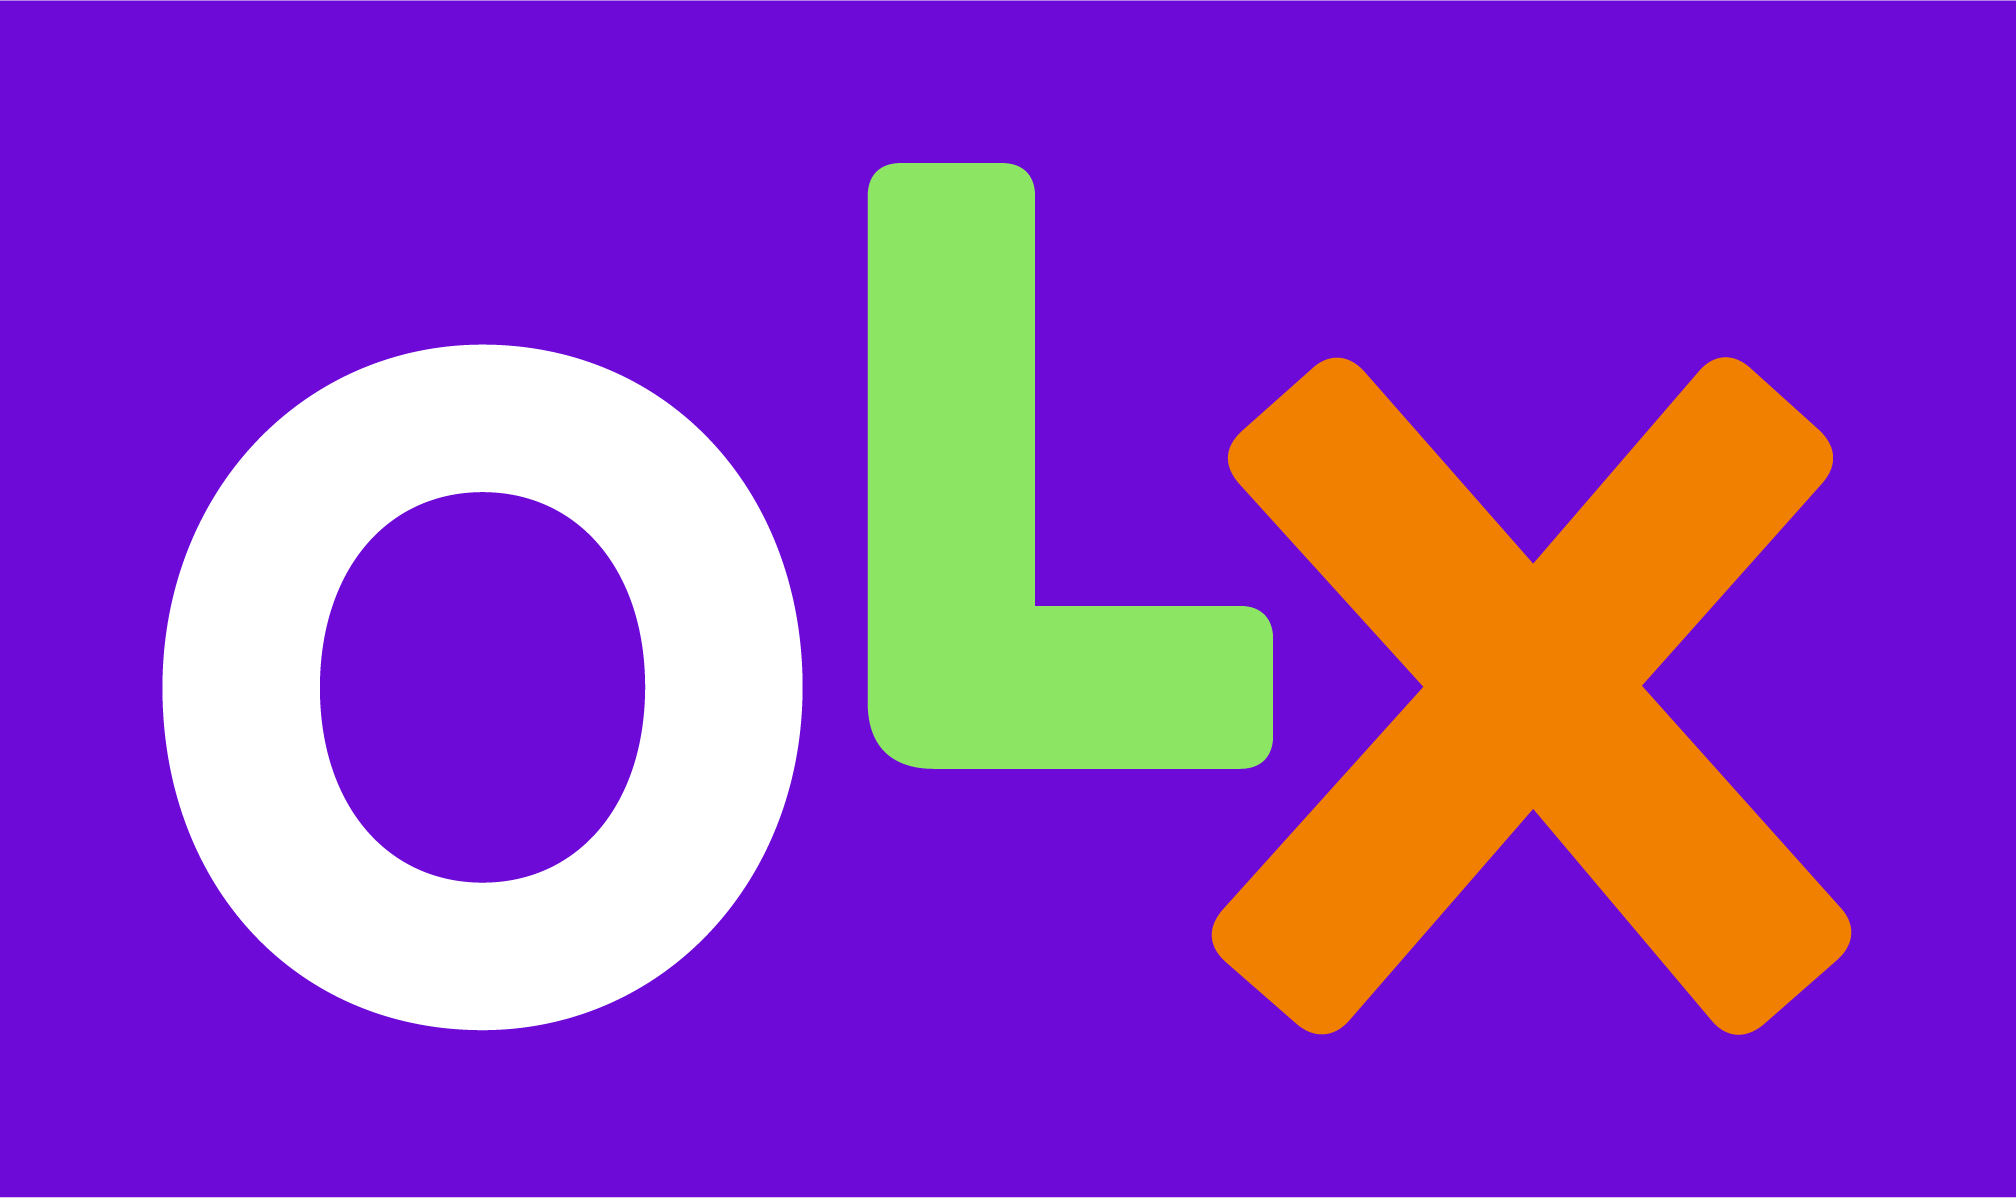 Покупки с OLX теперь можно доставлять по новому